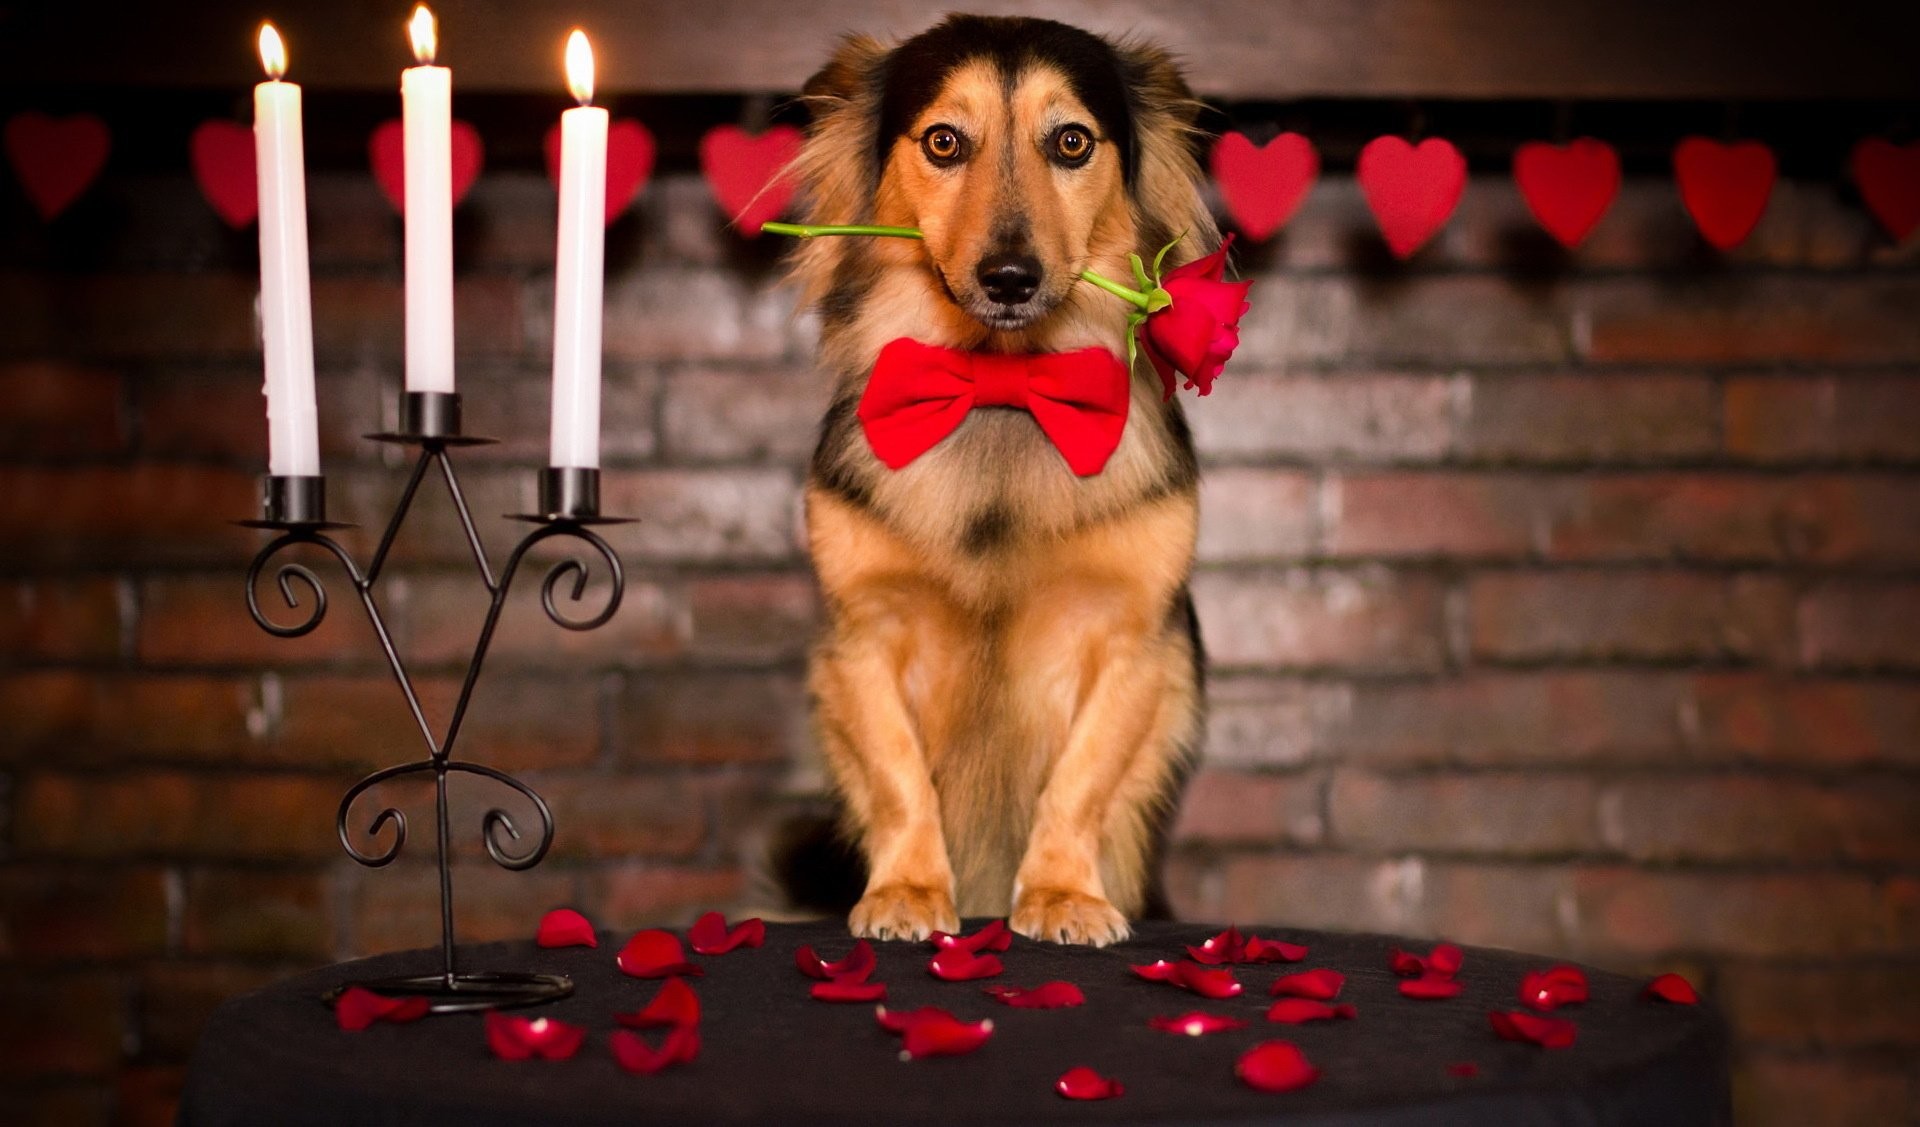 1920x1127 Rose friend dog love mood valentine valentines wallpaper |  |  433529 | WallpaperUP